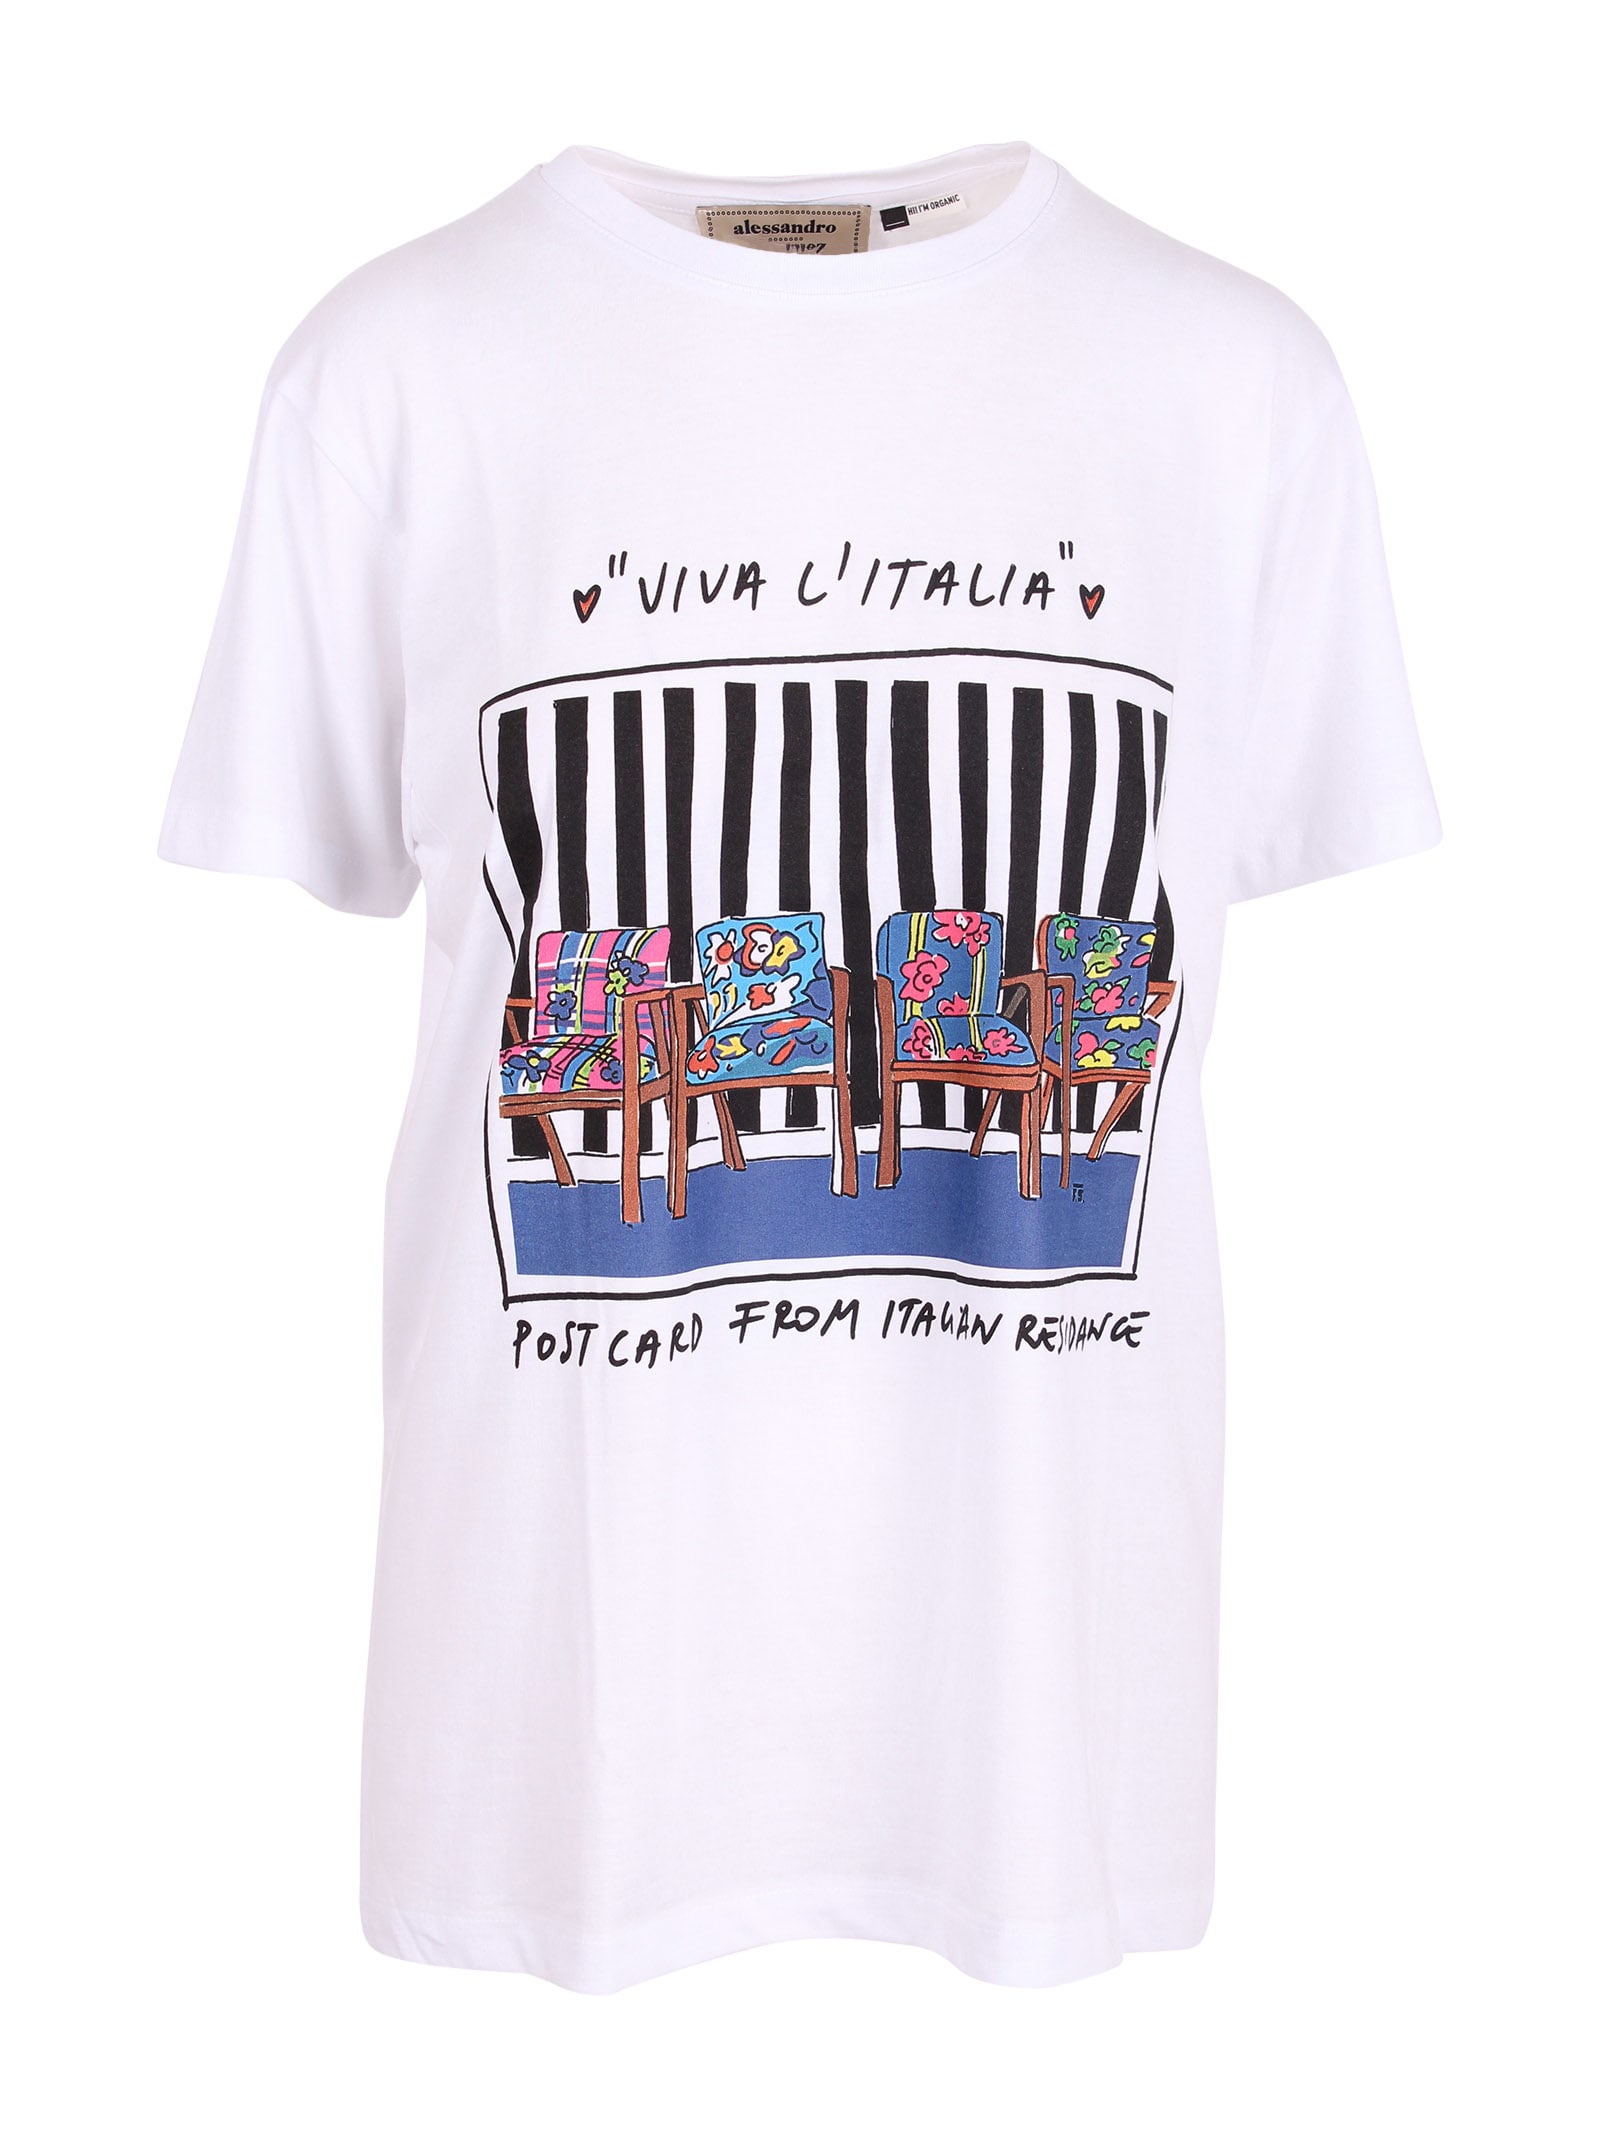 Alessandro Enriquez residance Print Cotton T-shirt